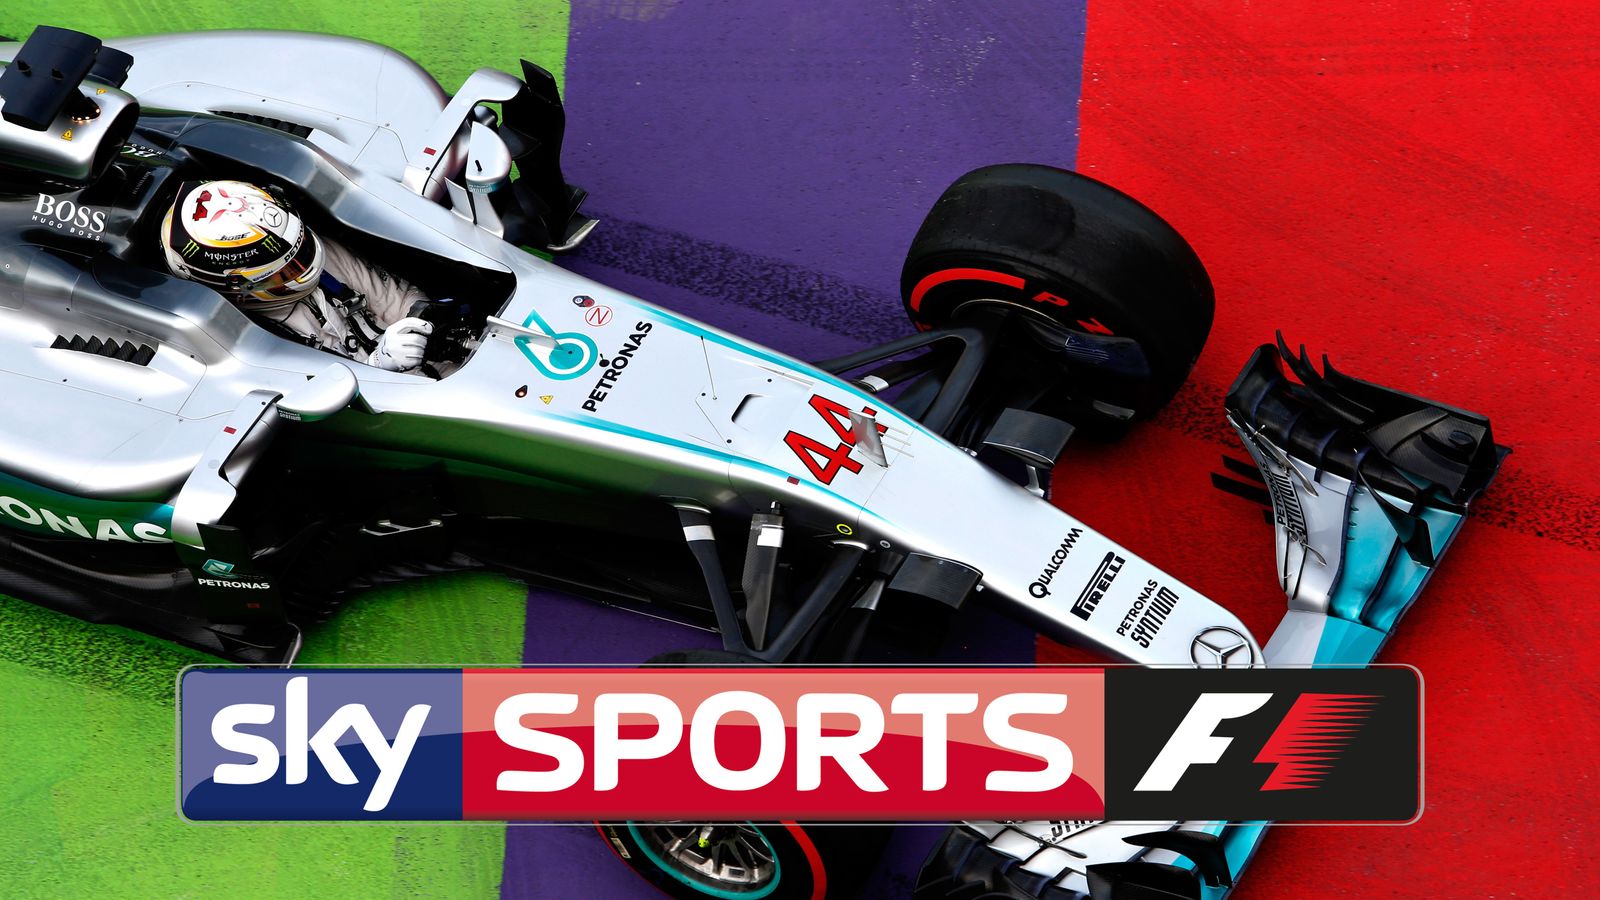 Every 2017 race live on Sky Sports F1 F1 News